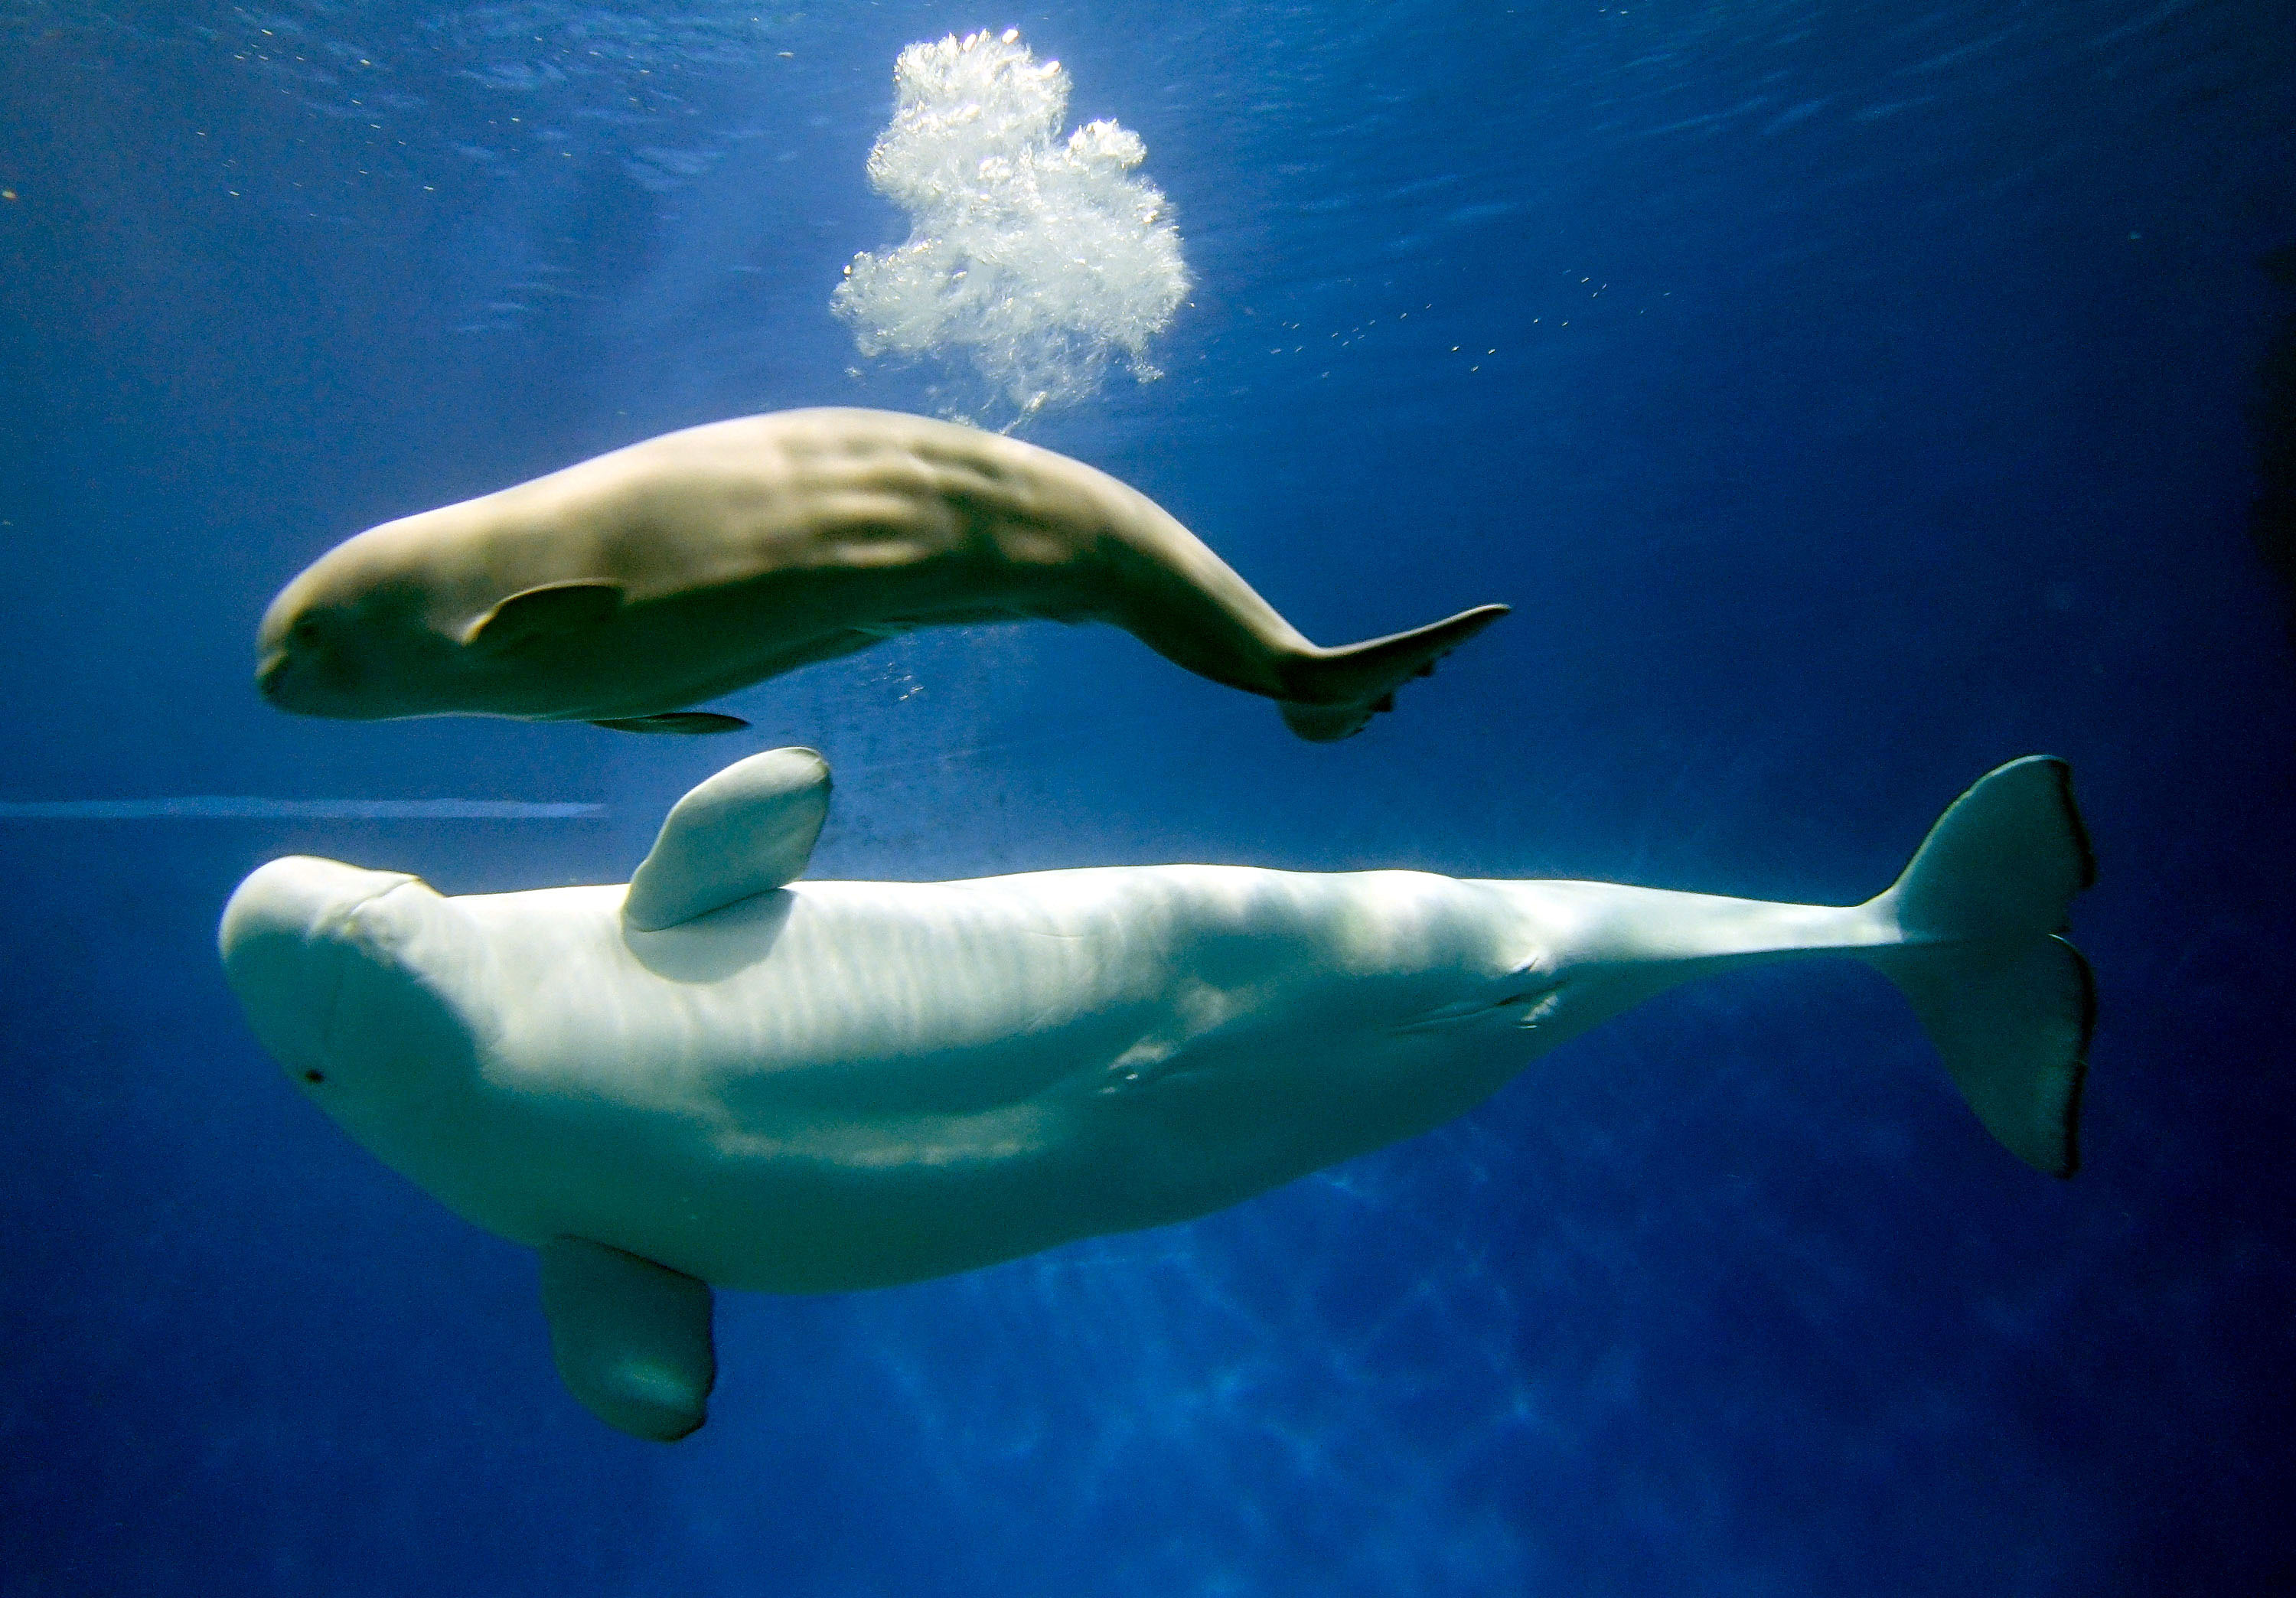 珠海长隆一次繁育成功三头小白鲸